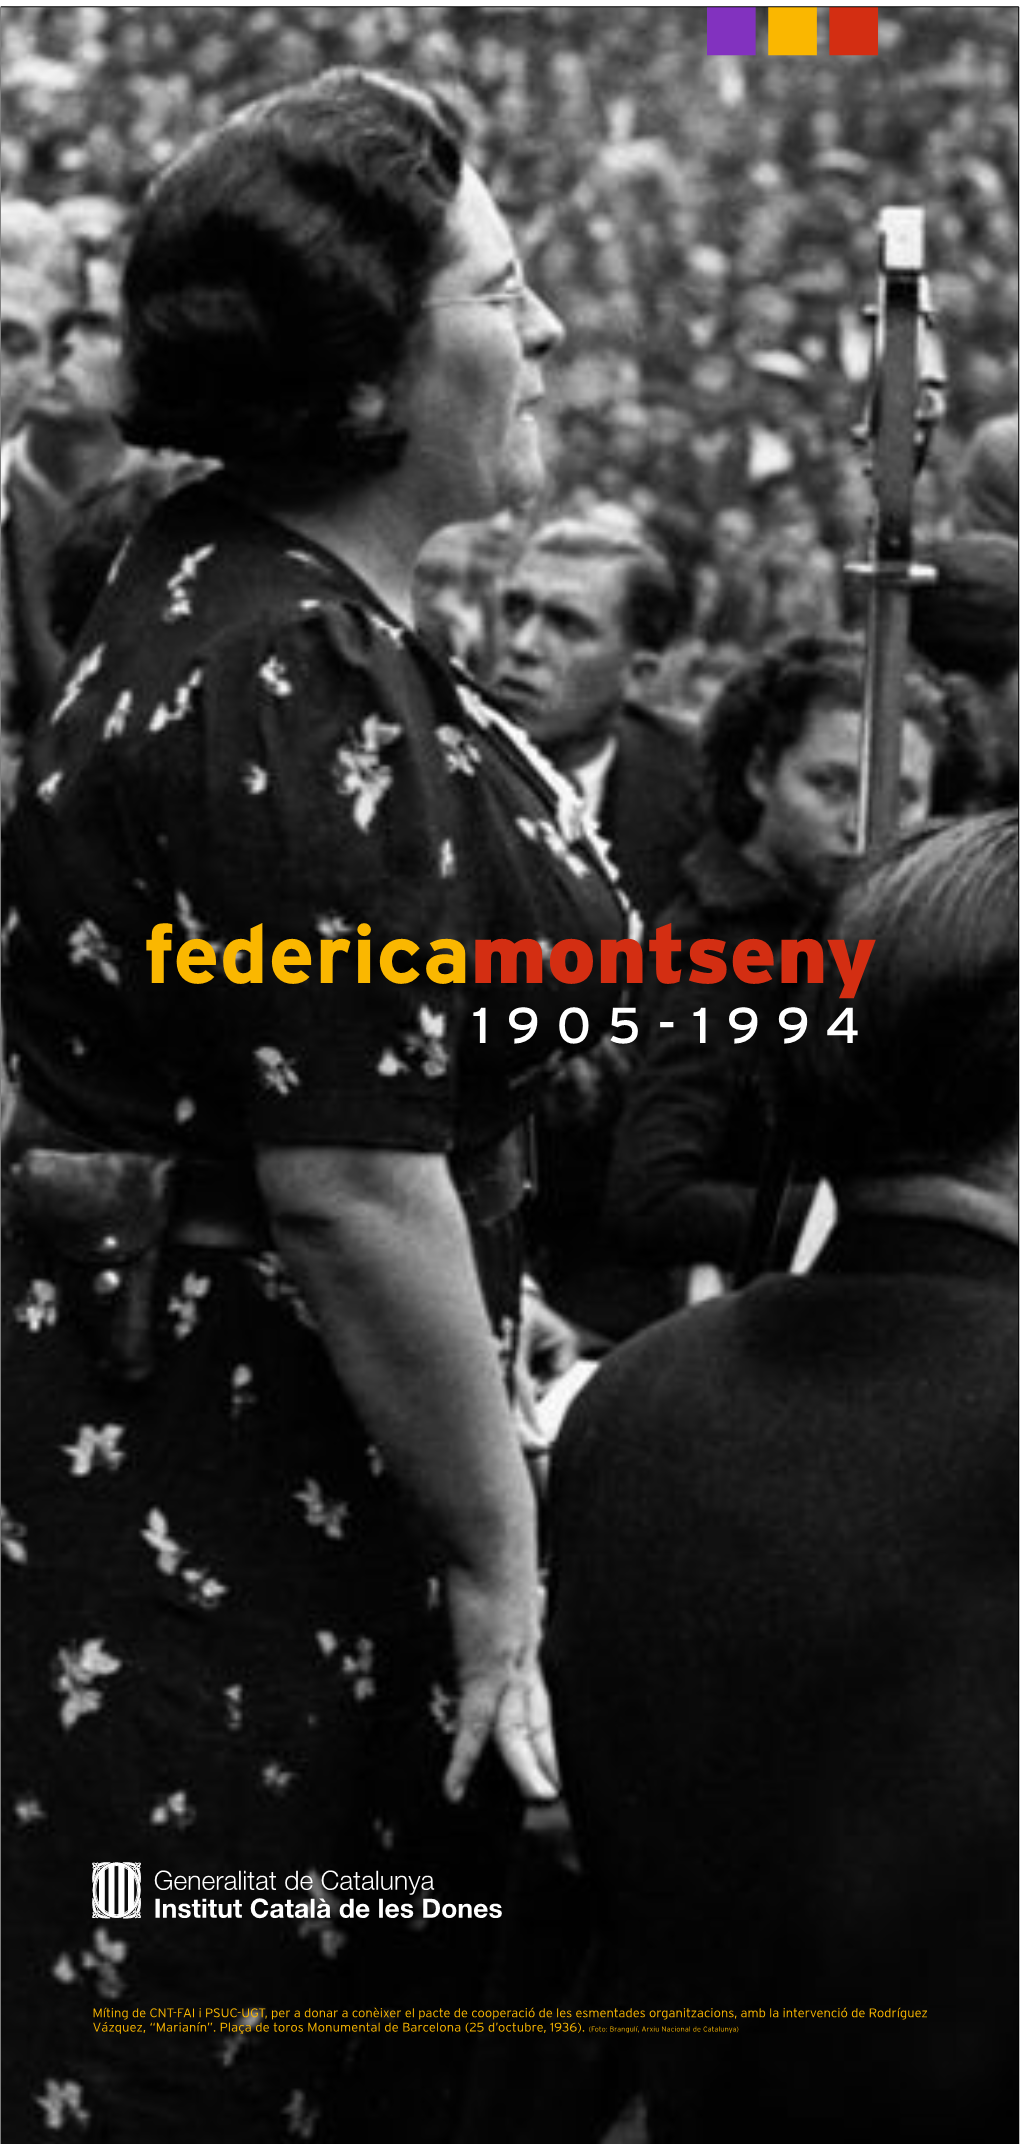 Federicamontseny 1905-1994